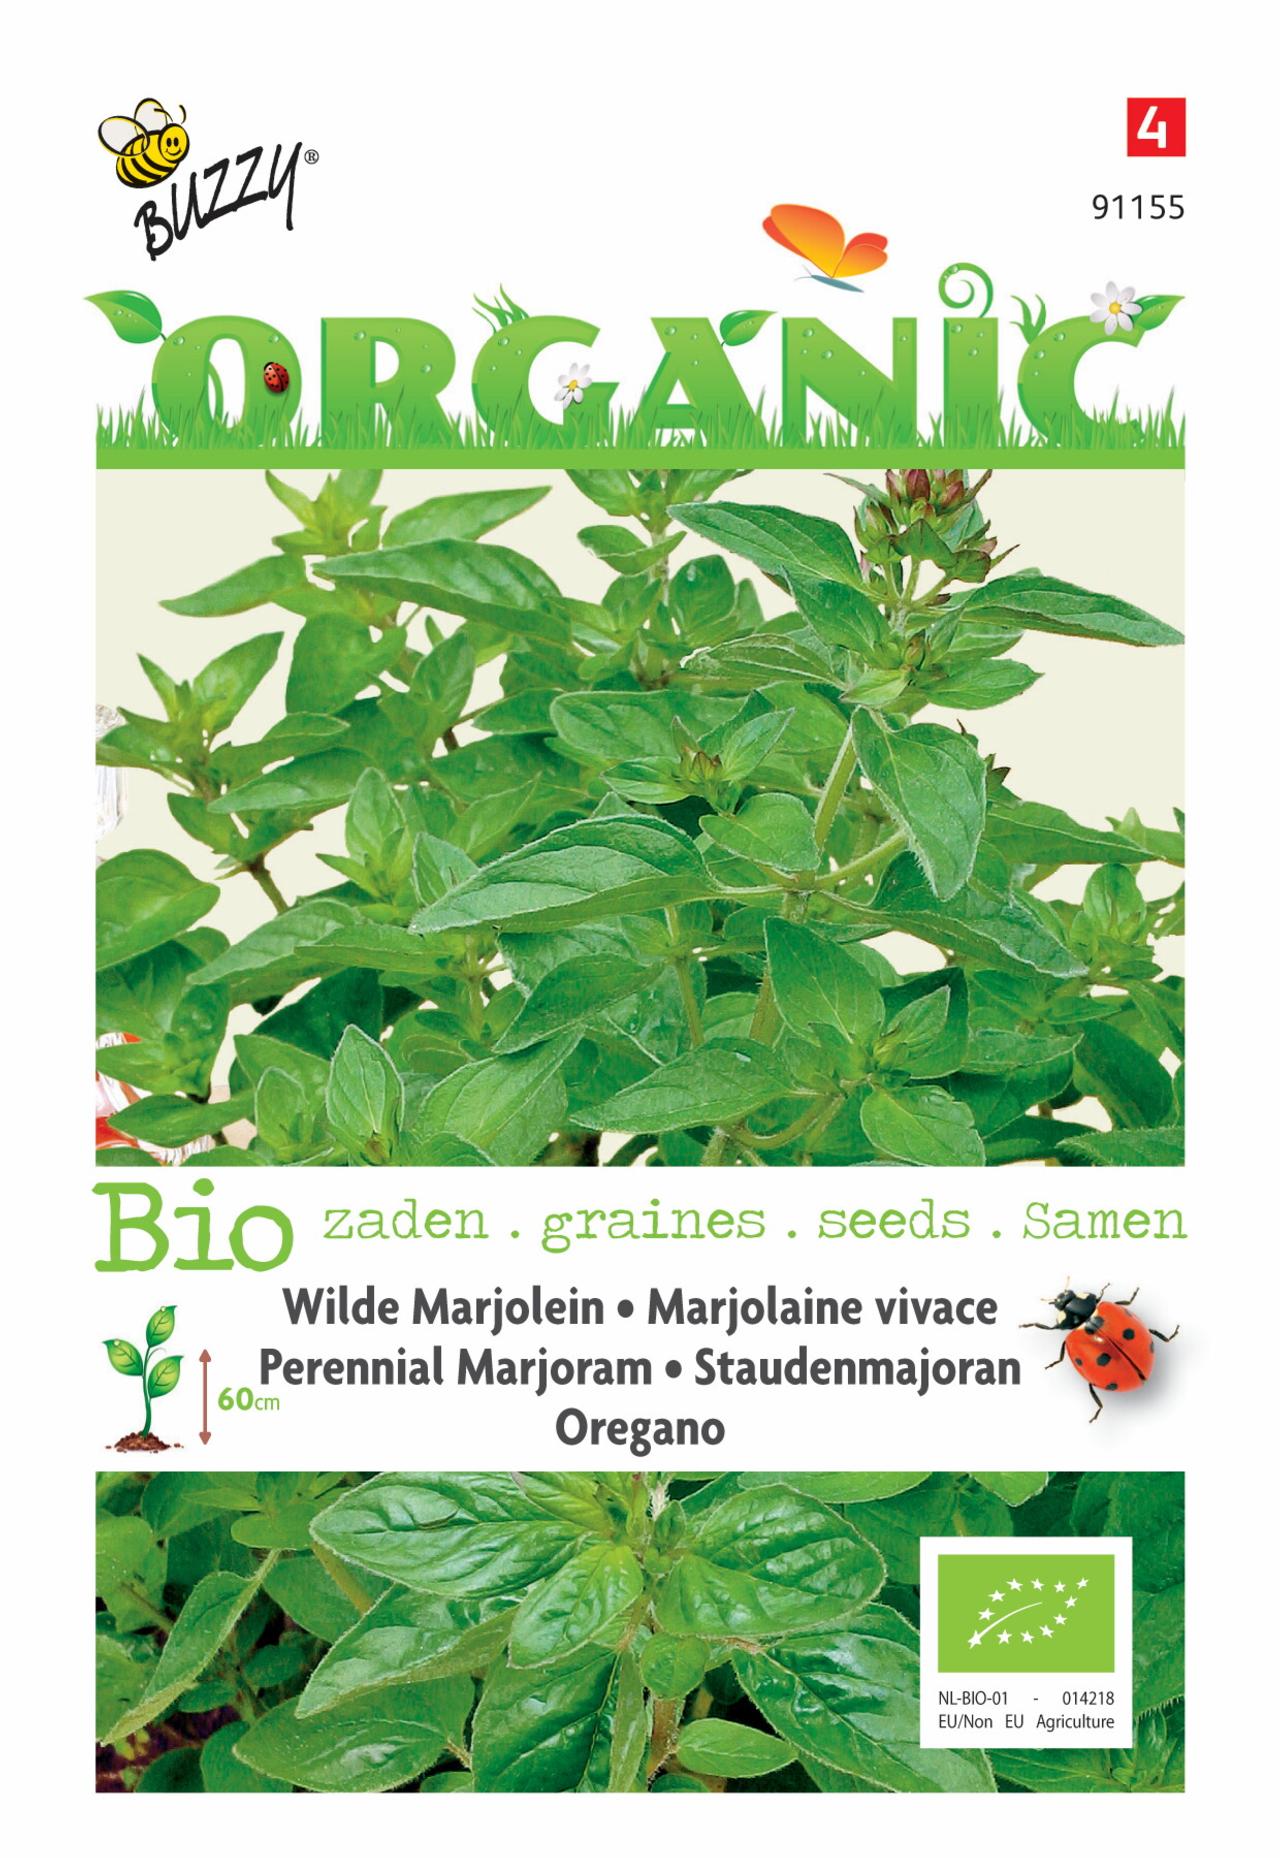 Origanum vulgare (BIO) plant